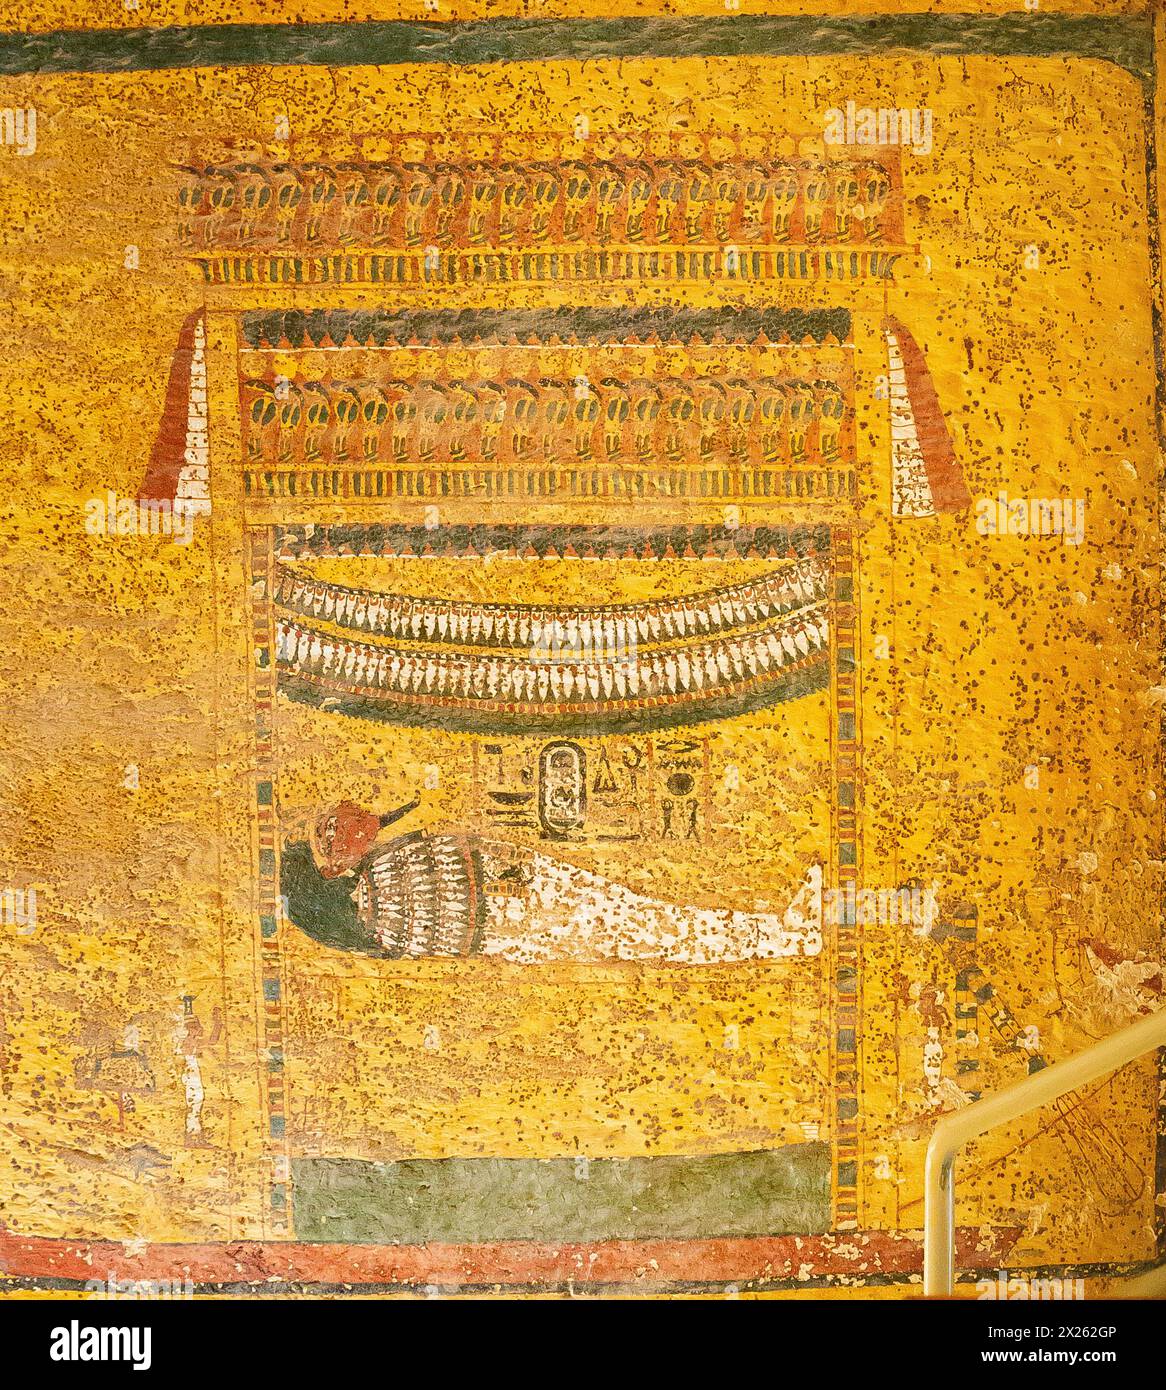 Ägypten, Luxor, Grab von Tutanchamun, Ostwand des Trauerzimmers, Trauerprozession : die Mumie, auf einem Bett, unter einem Baldachin, auf einem Schlitten. Stockfoto